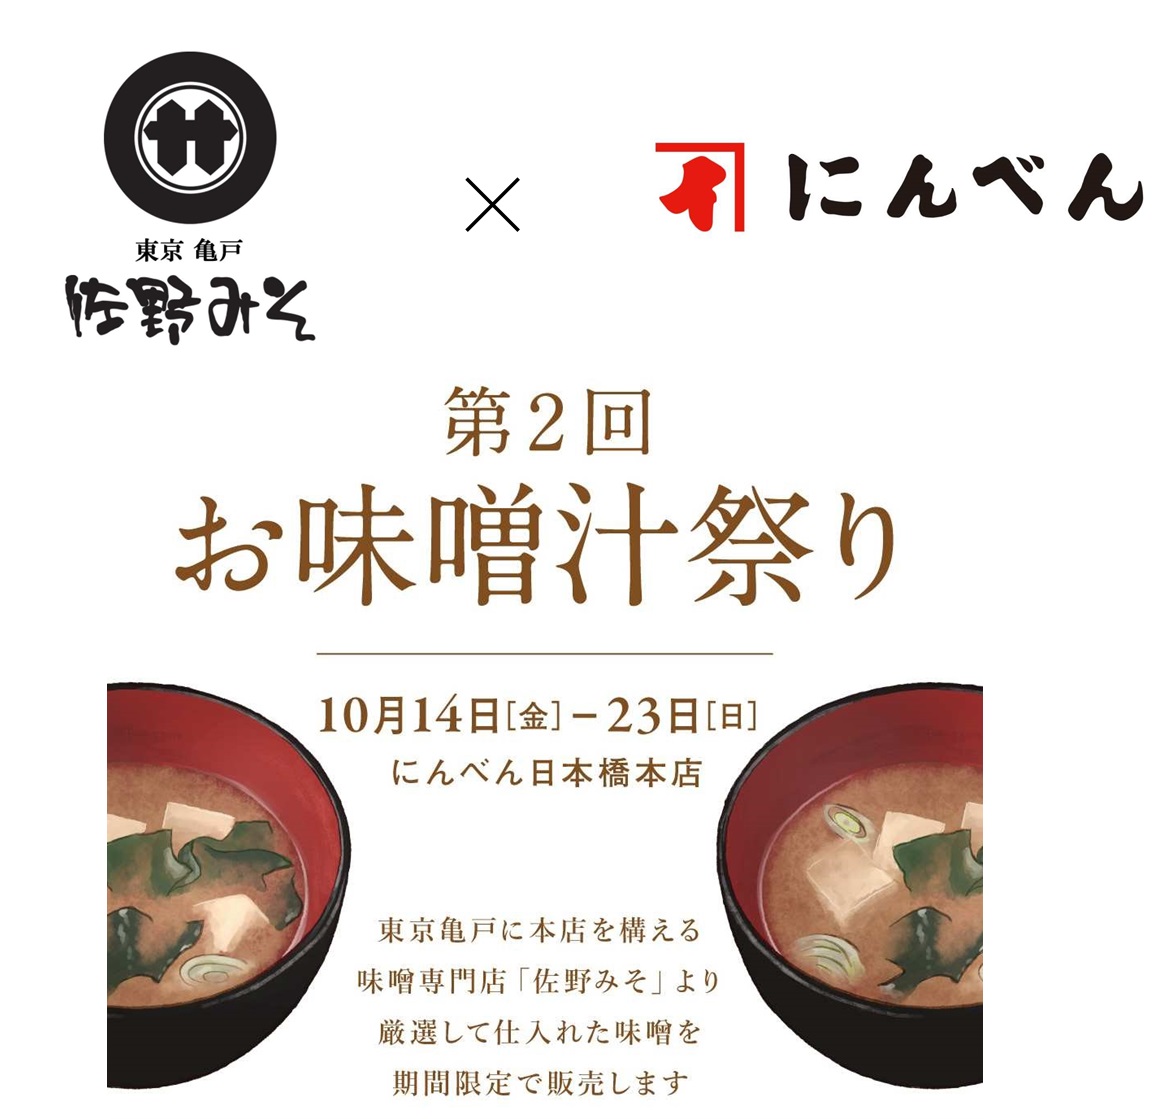 みそ専門店×「にんべん 日本橋本店」　「第2回お味噌汁祭り」 、10月23日まで